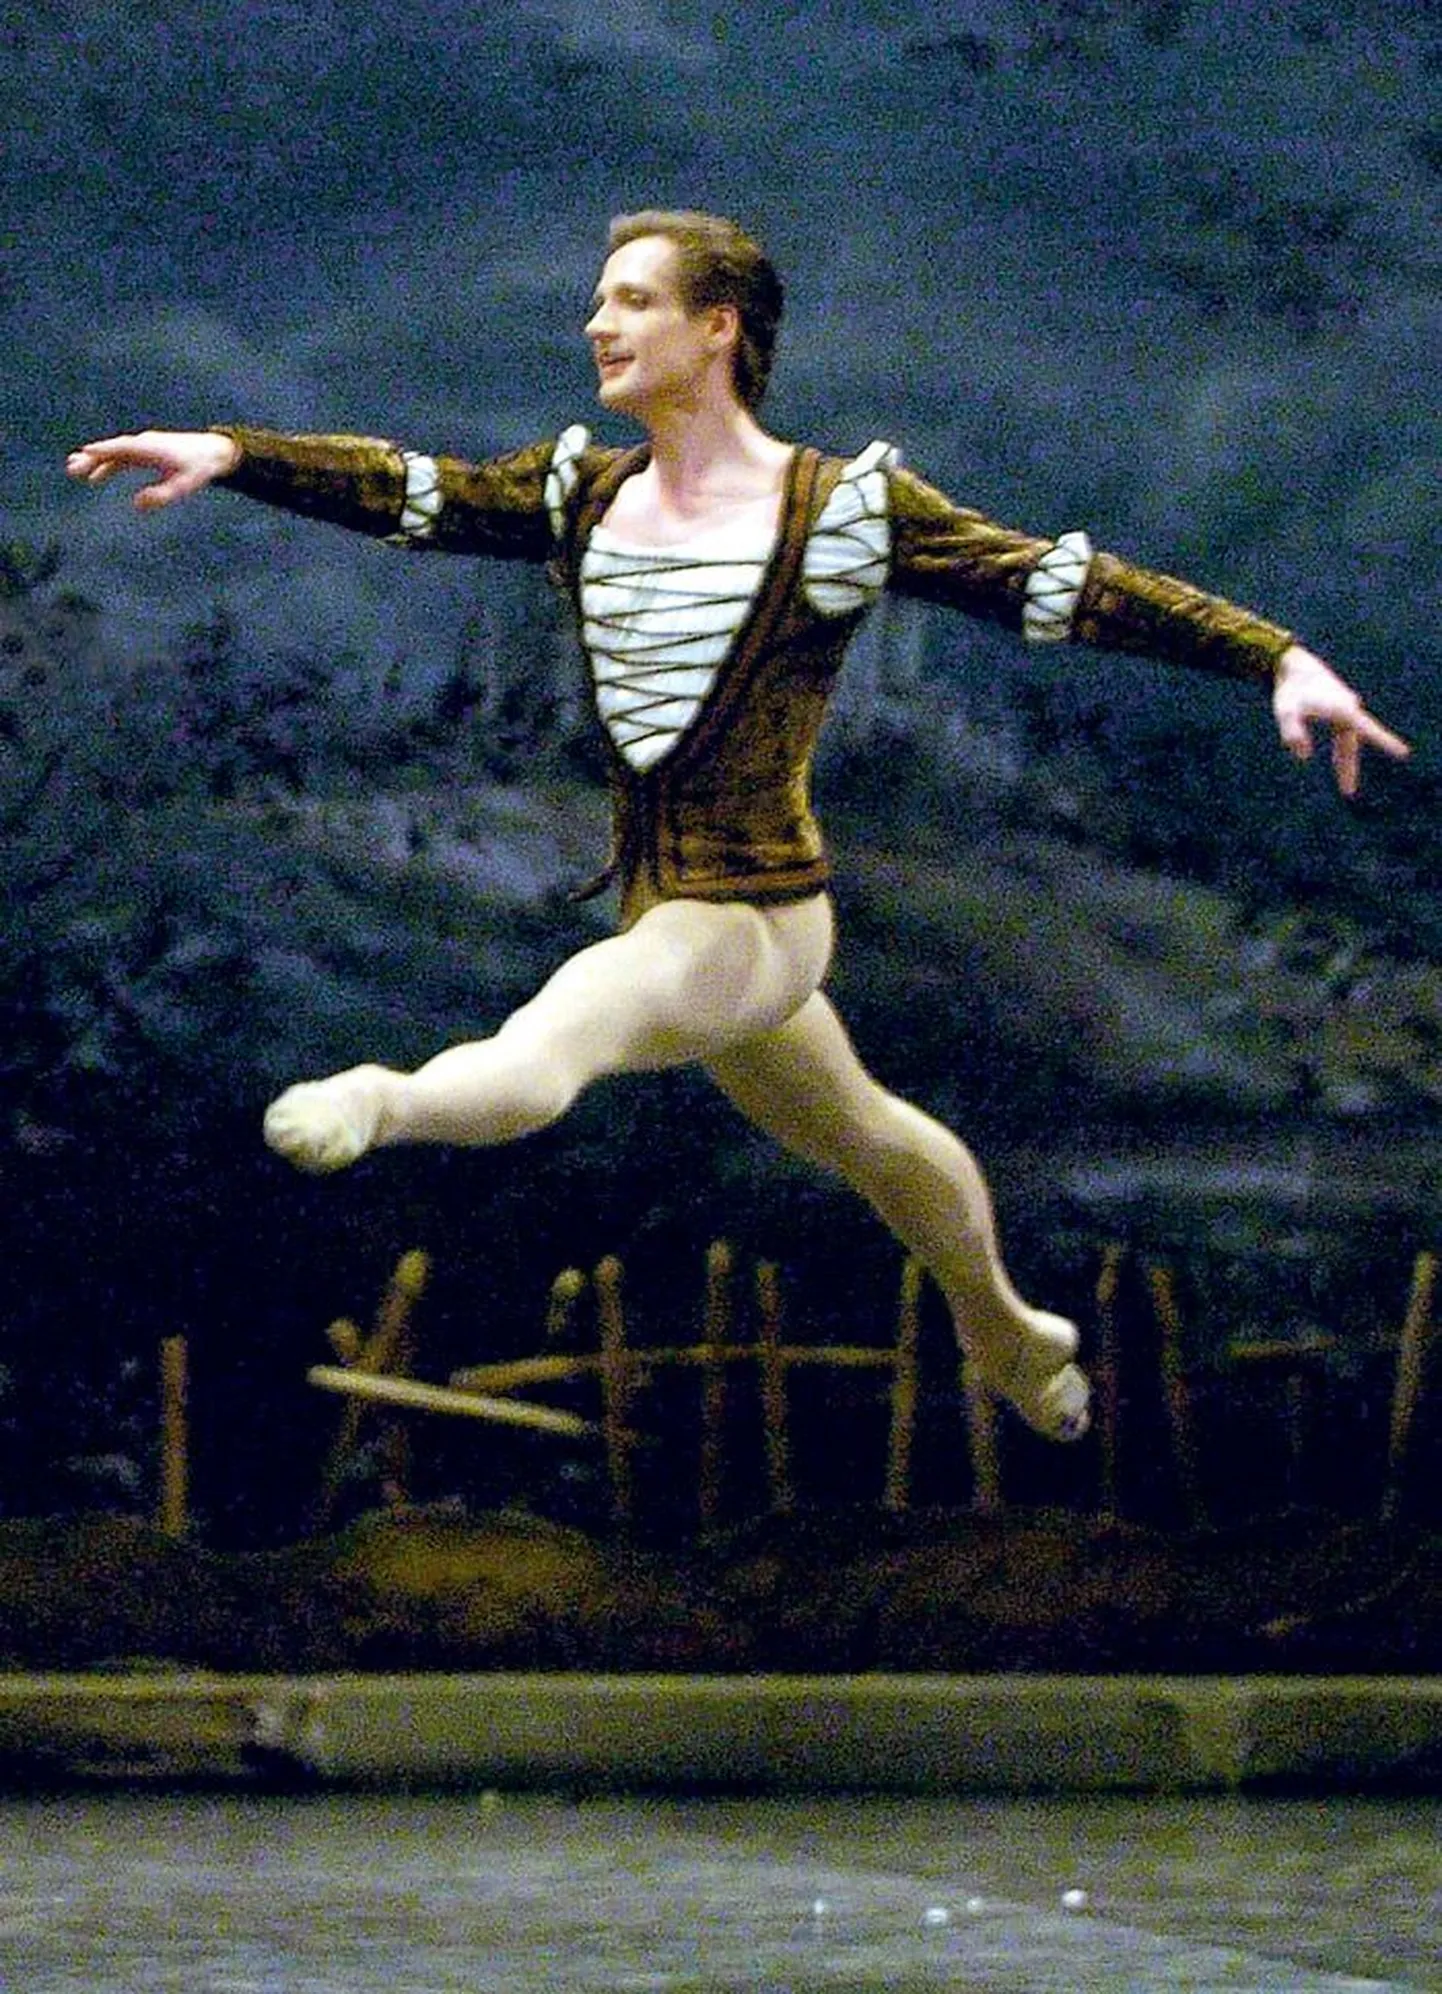 Lennukas on olnud Toomas Eduri ja Age Oksa karjäär Inglise Rahvuslikus Balletis, lennukad on ka augustis rahvusooperi balletijuhina tööle asuva mehe mõtted tuua kohalikule rahvusballetile tuntust maailmas.